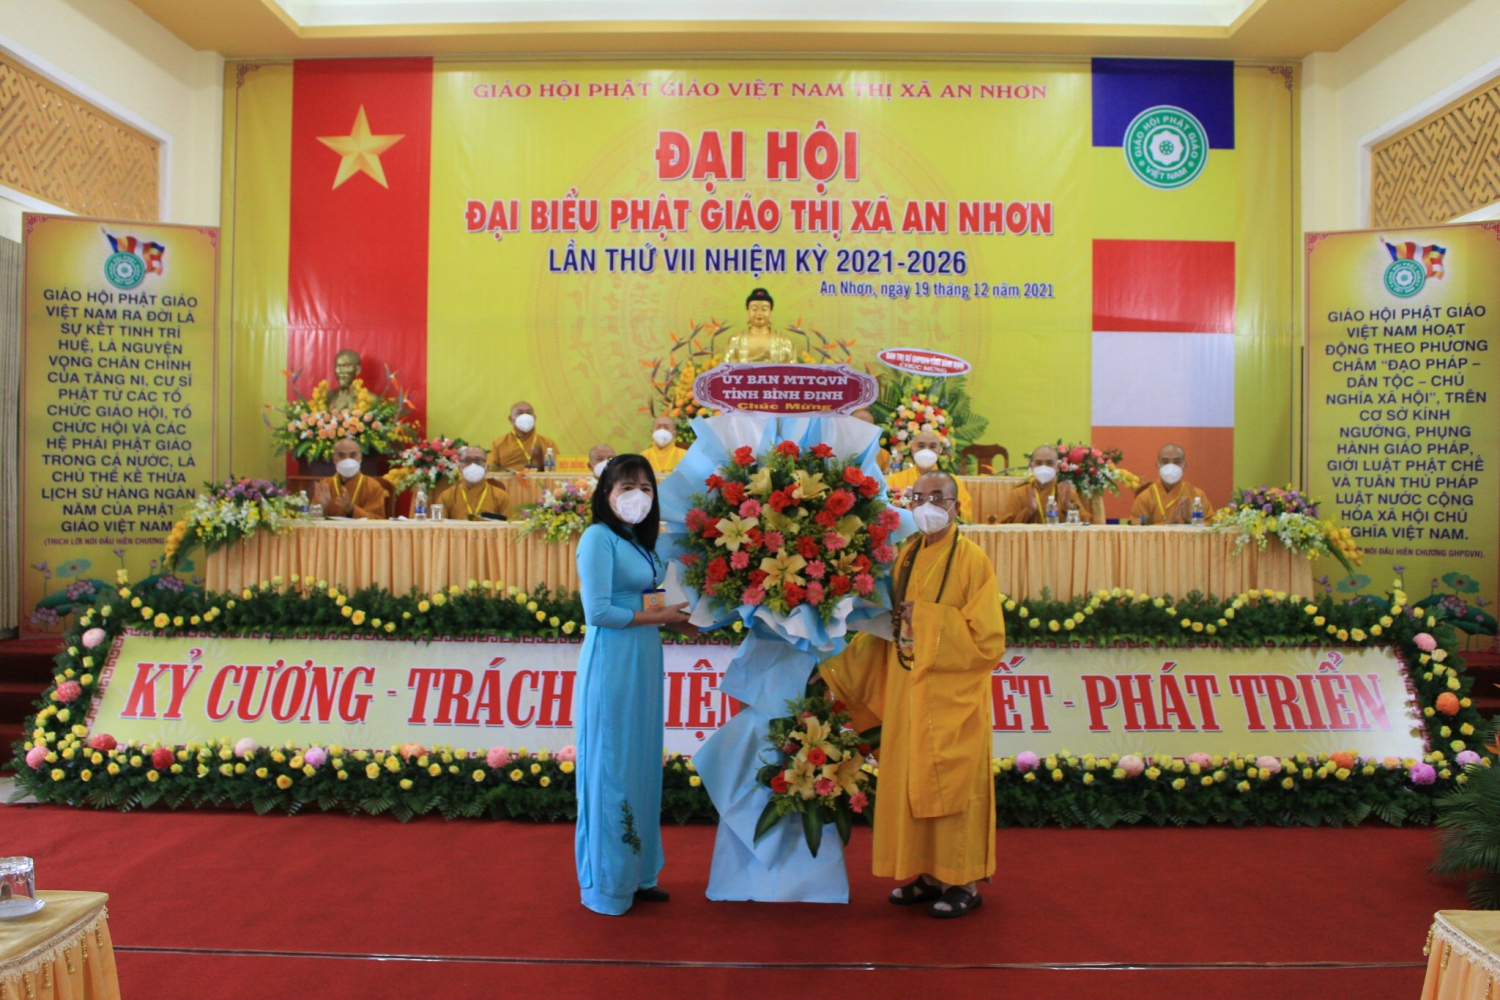 Đại Hội Đại Biểu Phật Giáo Thị Xã An Nhơn Lần Thứ Vii Nhiệm Kỳ 2021 - 2026